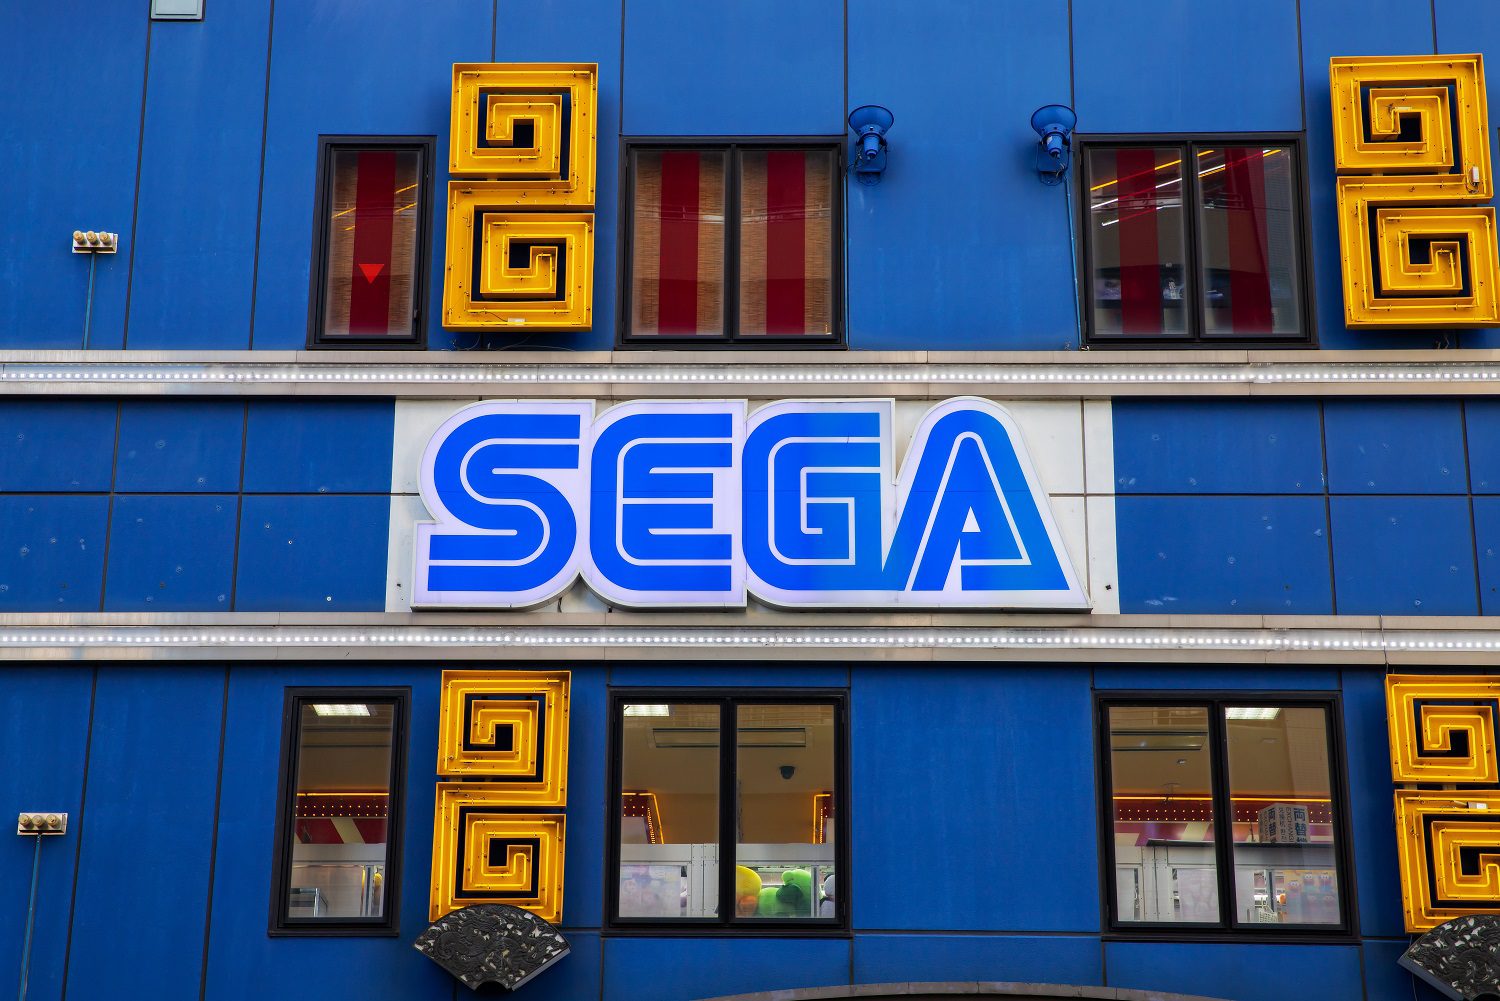 Un edificio con el logo de Sega en la fachada.